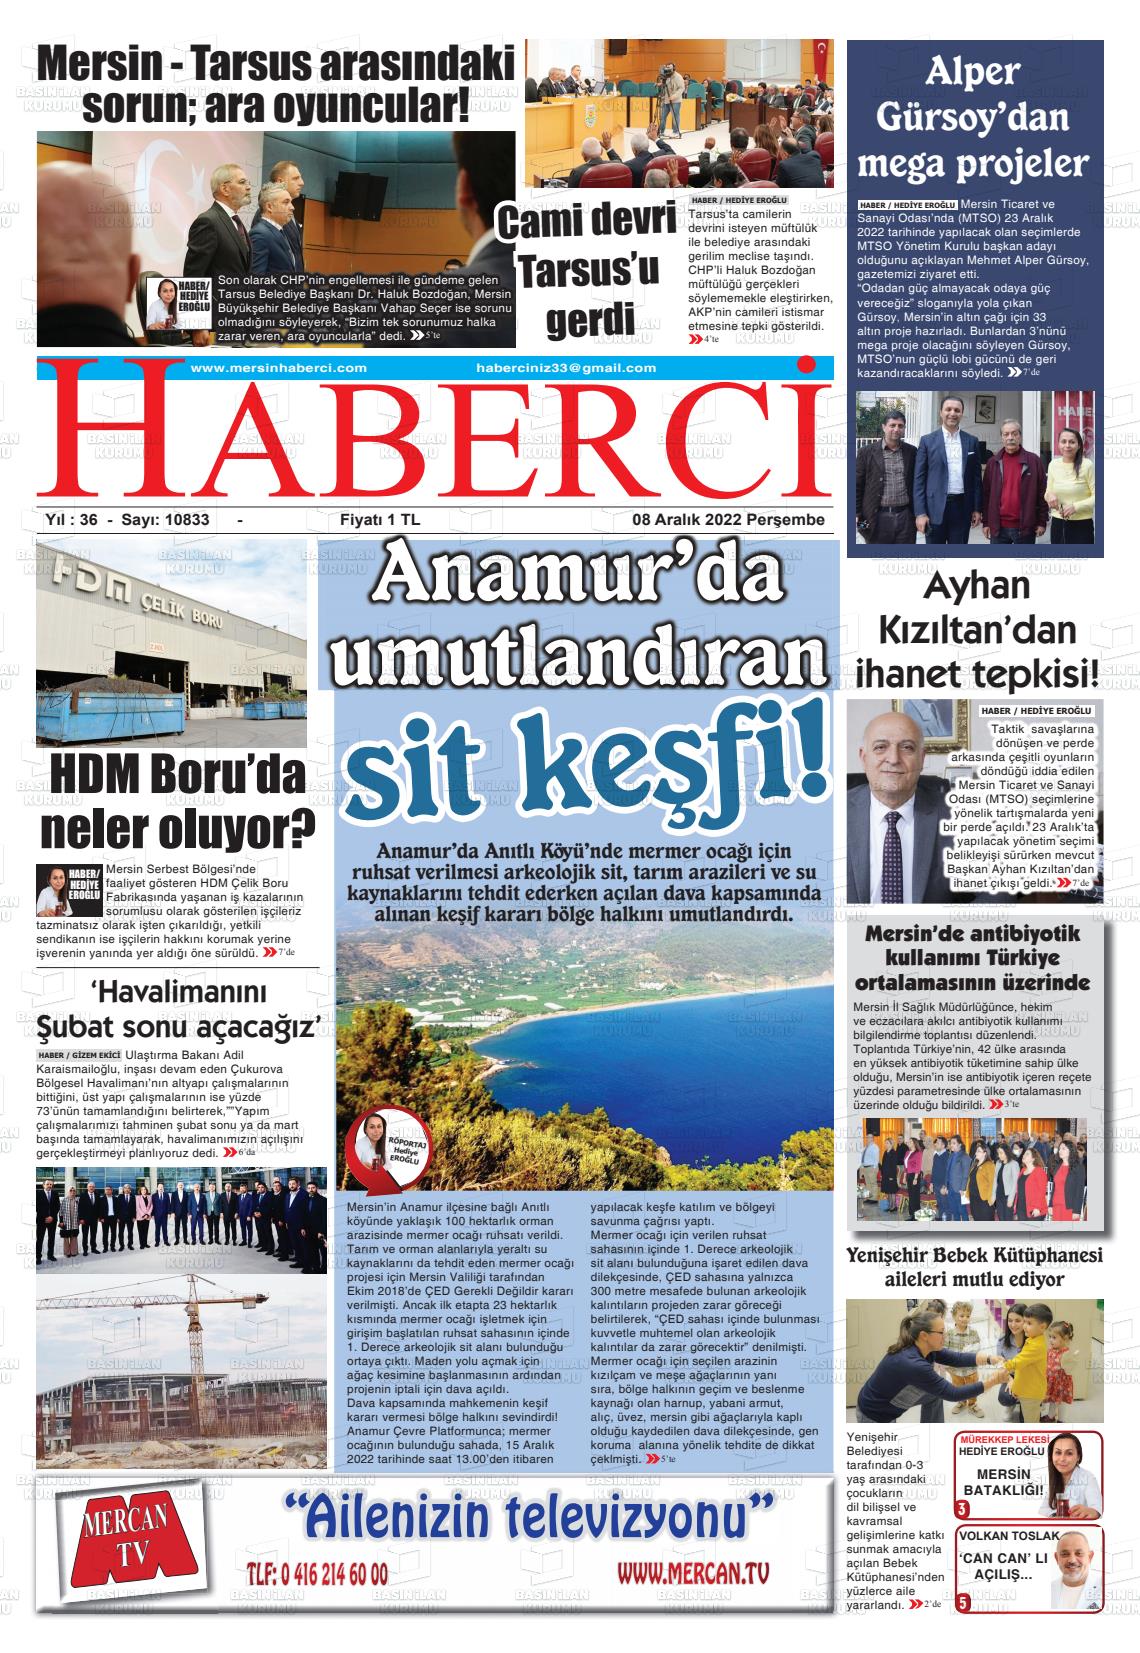 08 Aralık 2022 Mersin Haberci Gazete Manşeti